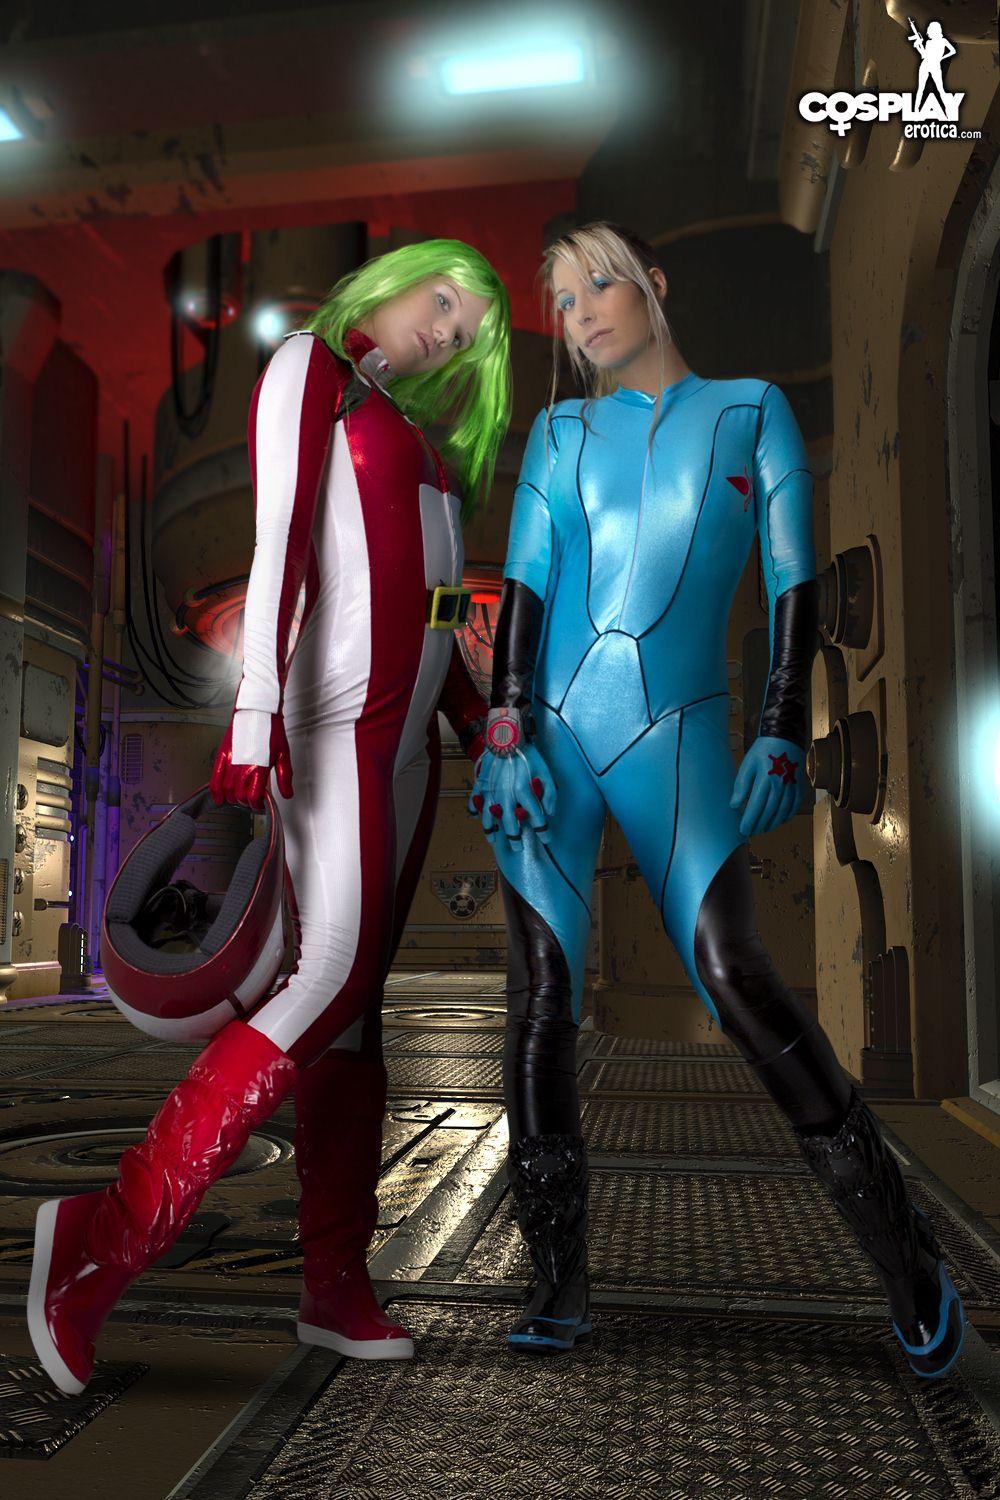 Les cosplayers Sandy Bell et Ginger se déguisent en personnages de Metroid et s'amusent.
 #54531009